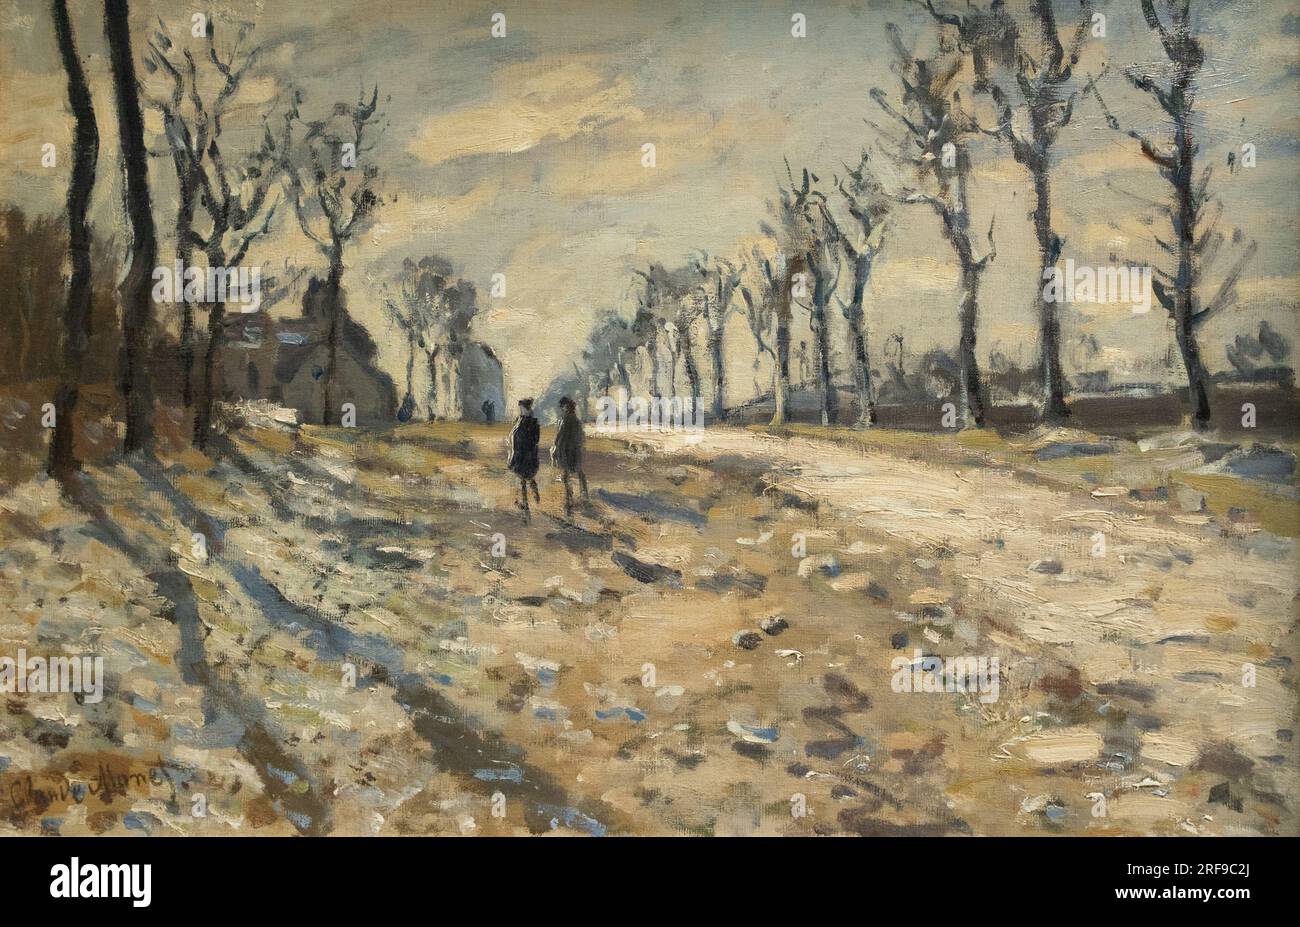 Claude Monet peinture ; 'route, effet de neige, Soleil couchant' - route, neige et coucher de soleil, 1864 ; Paysage de Monet ; impressionniste français du 19e siècle Banque D'Images